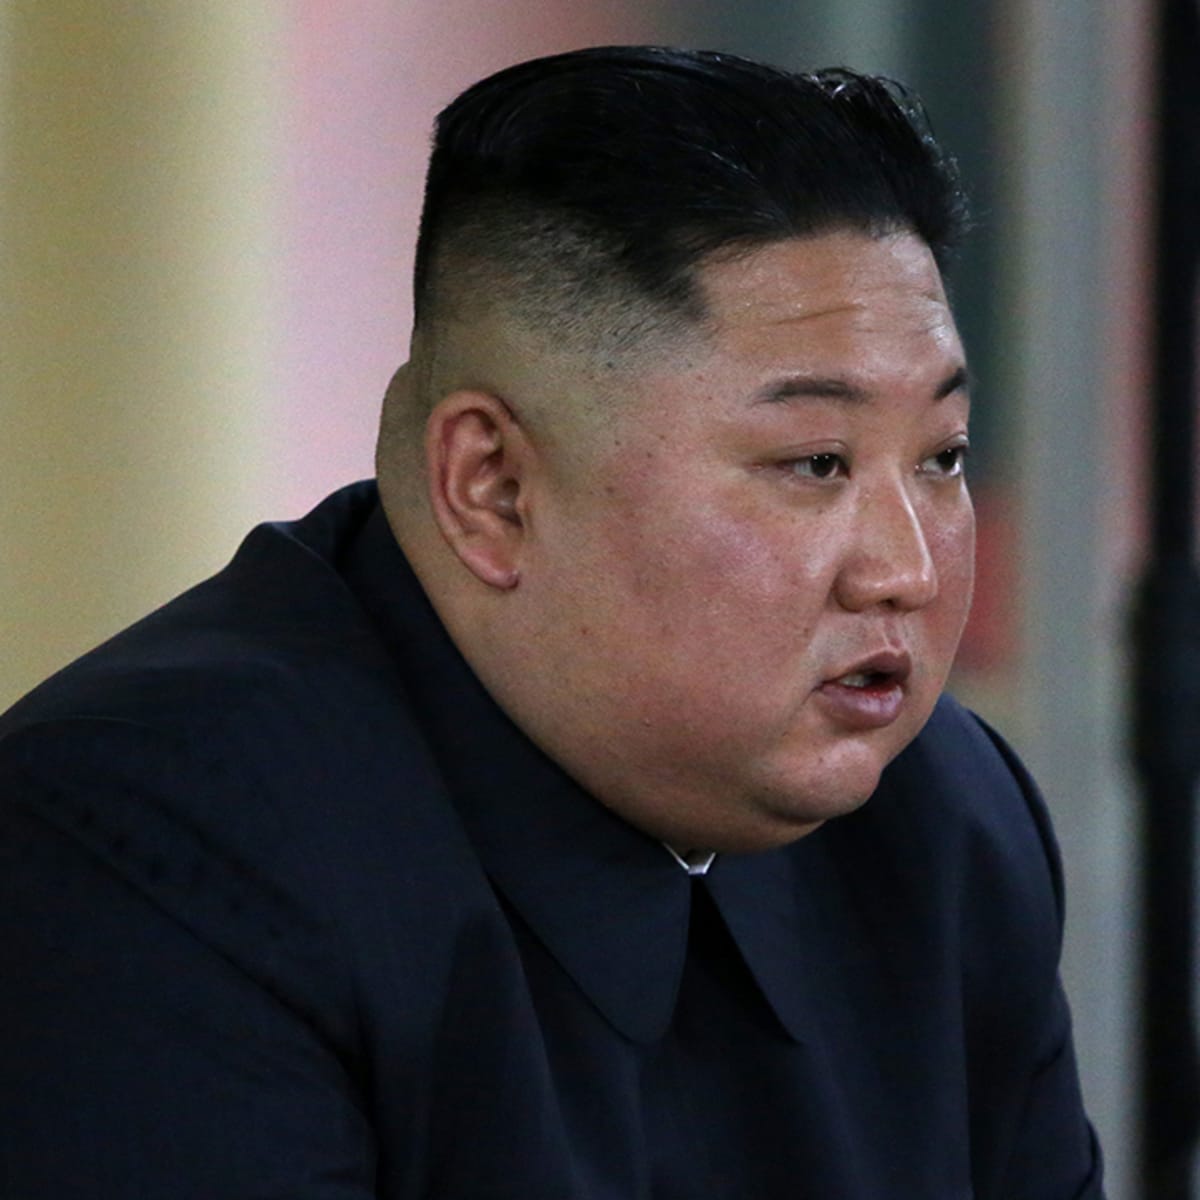 Kim Jong Un has a makeover? | CNN